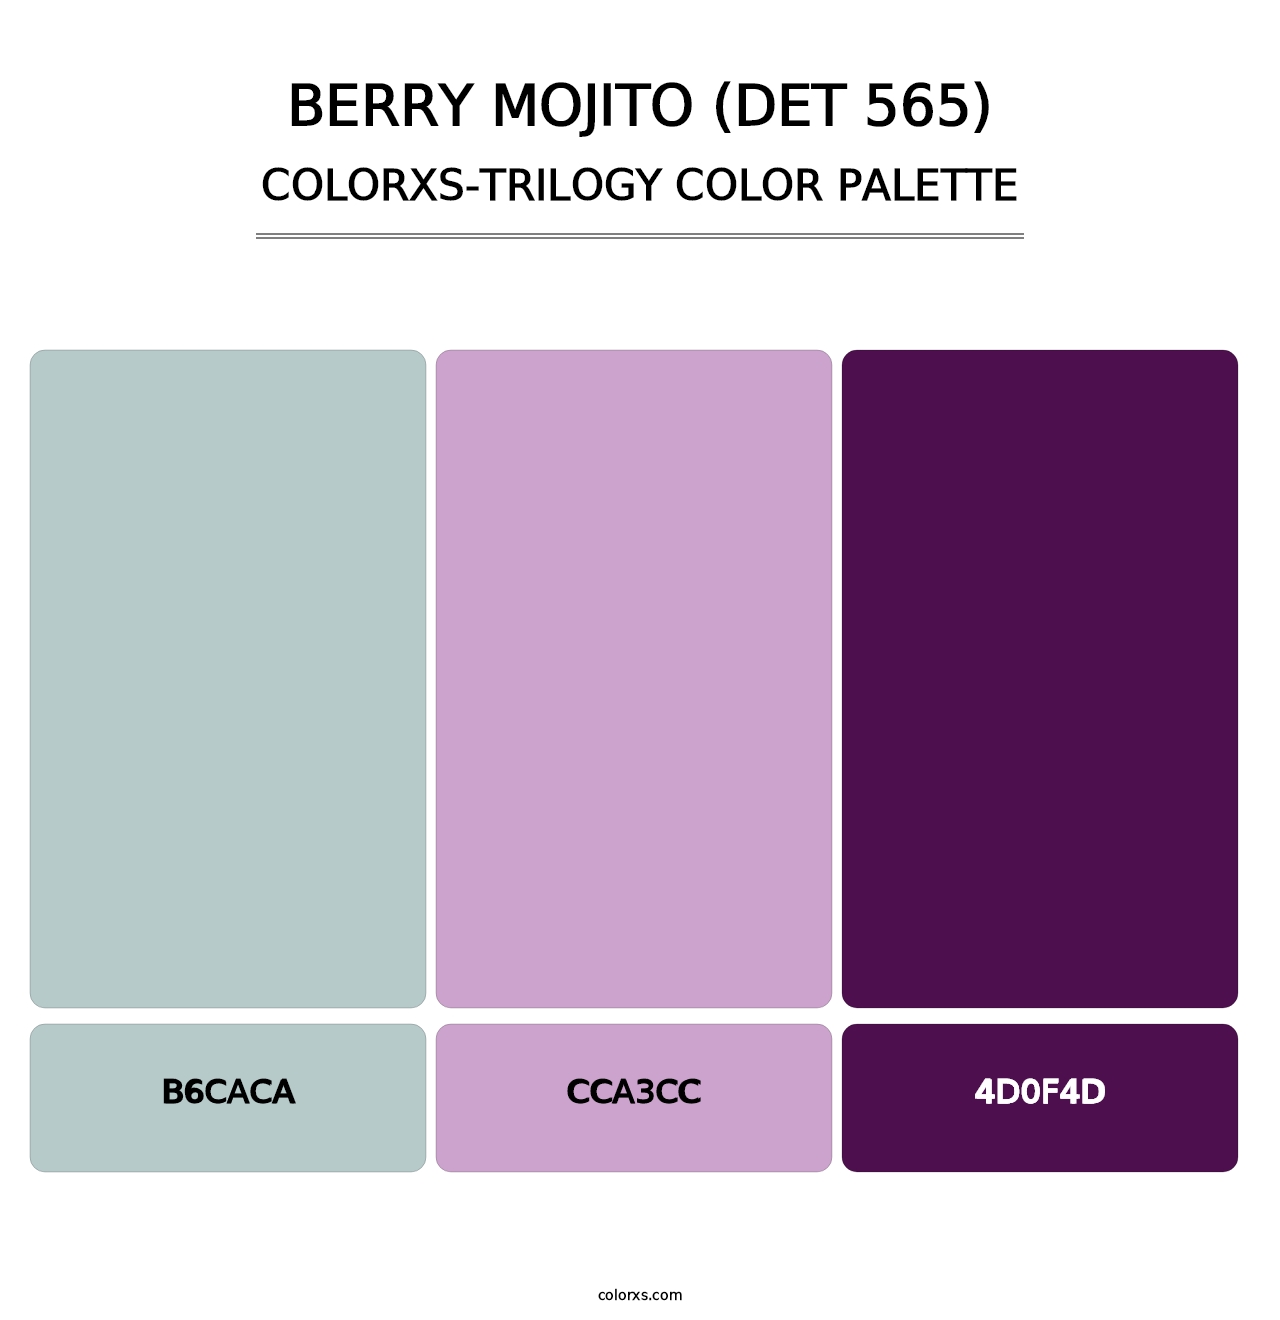 Berry Mojito (DET 565) - Colorxs Trilogy Palette